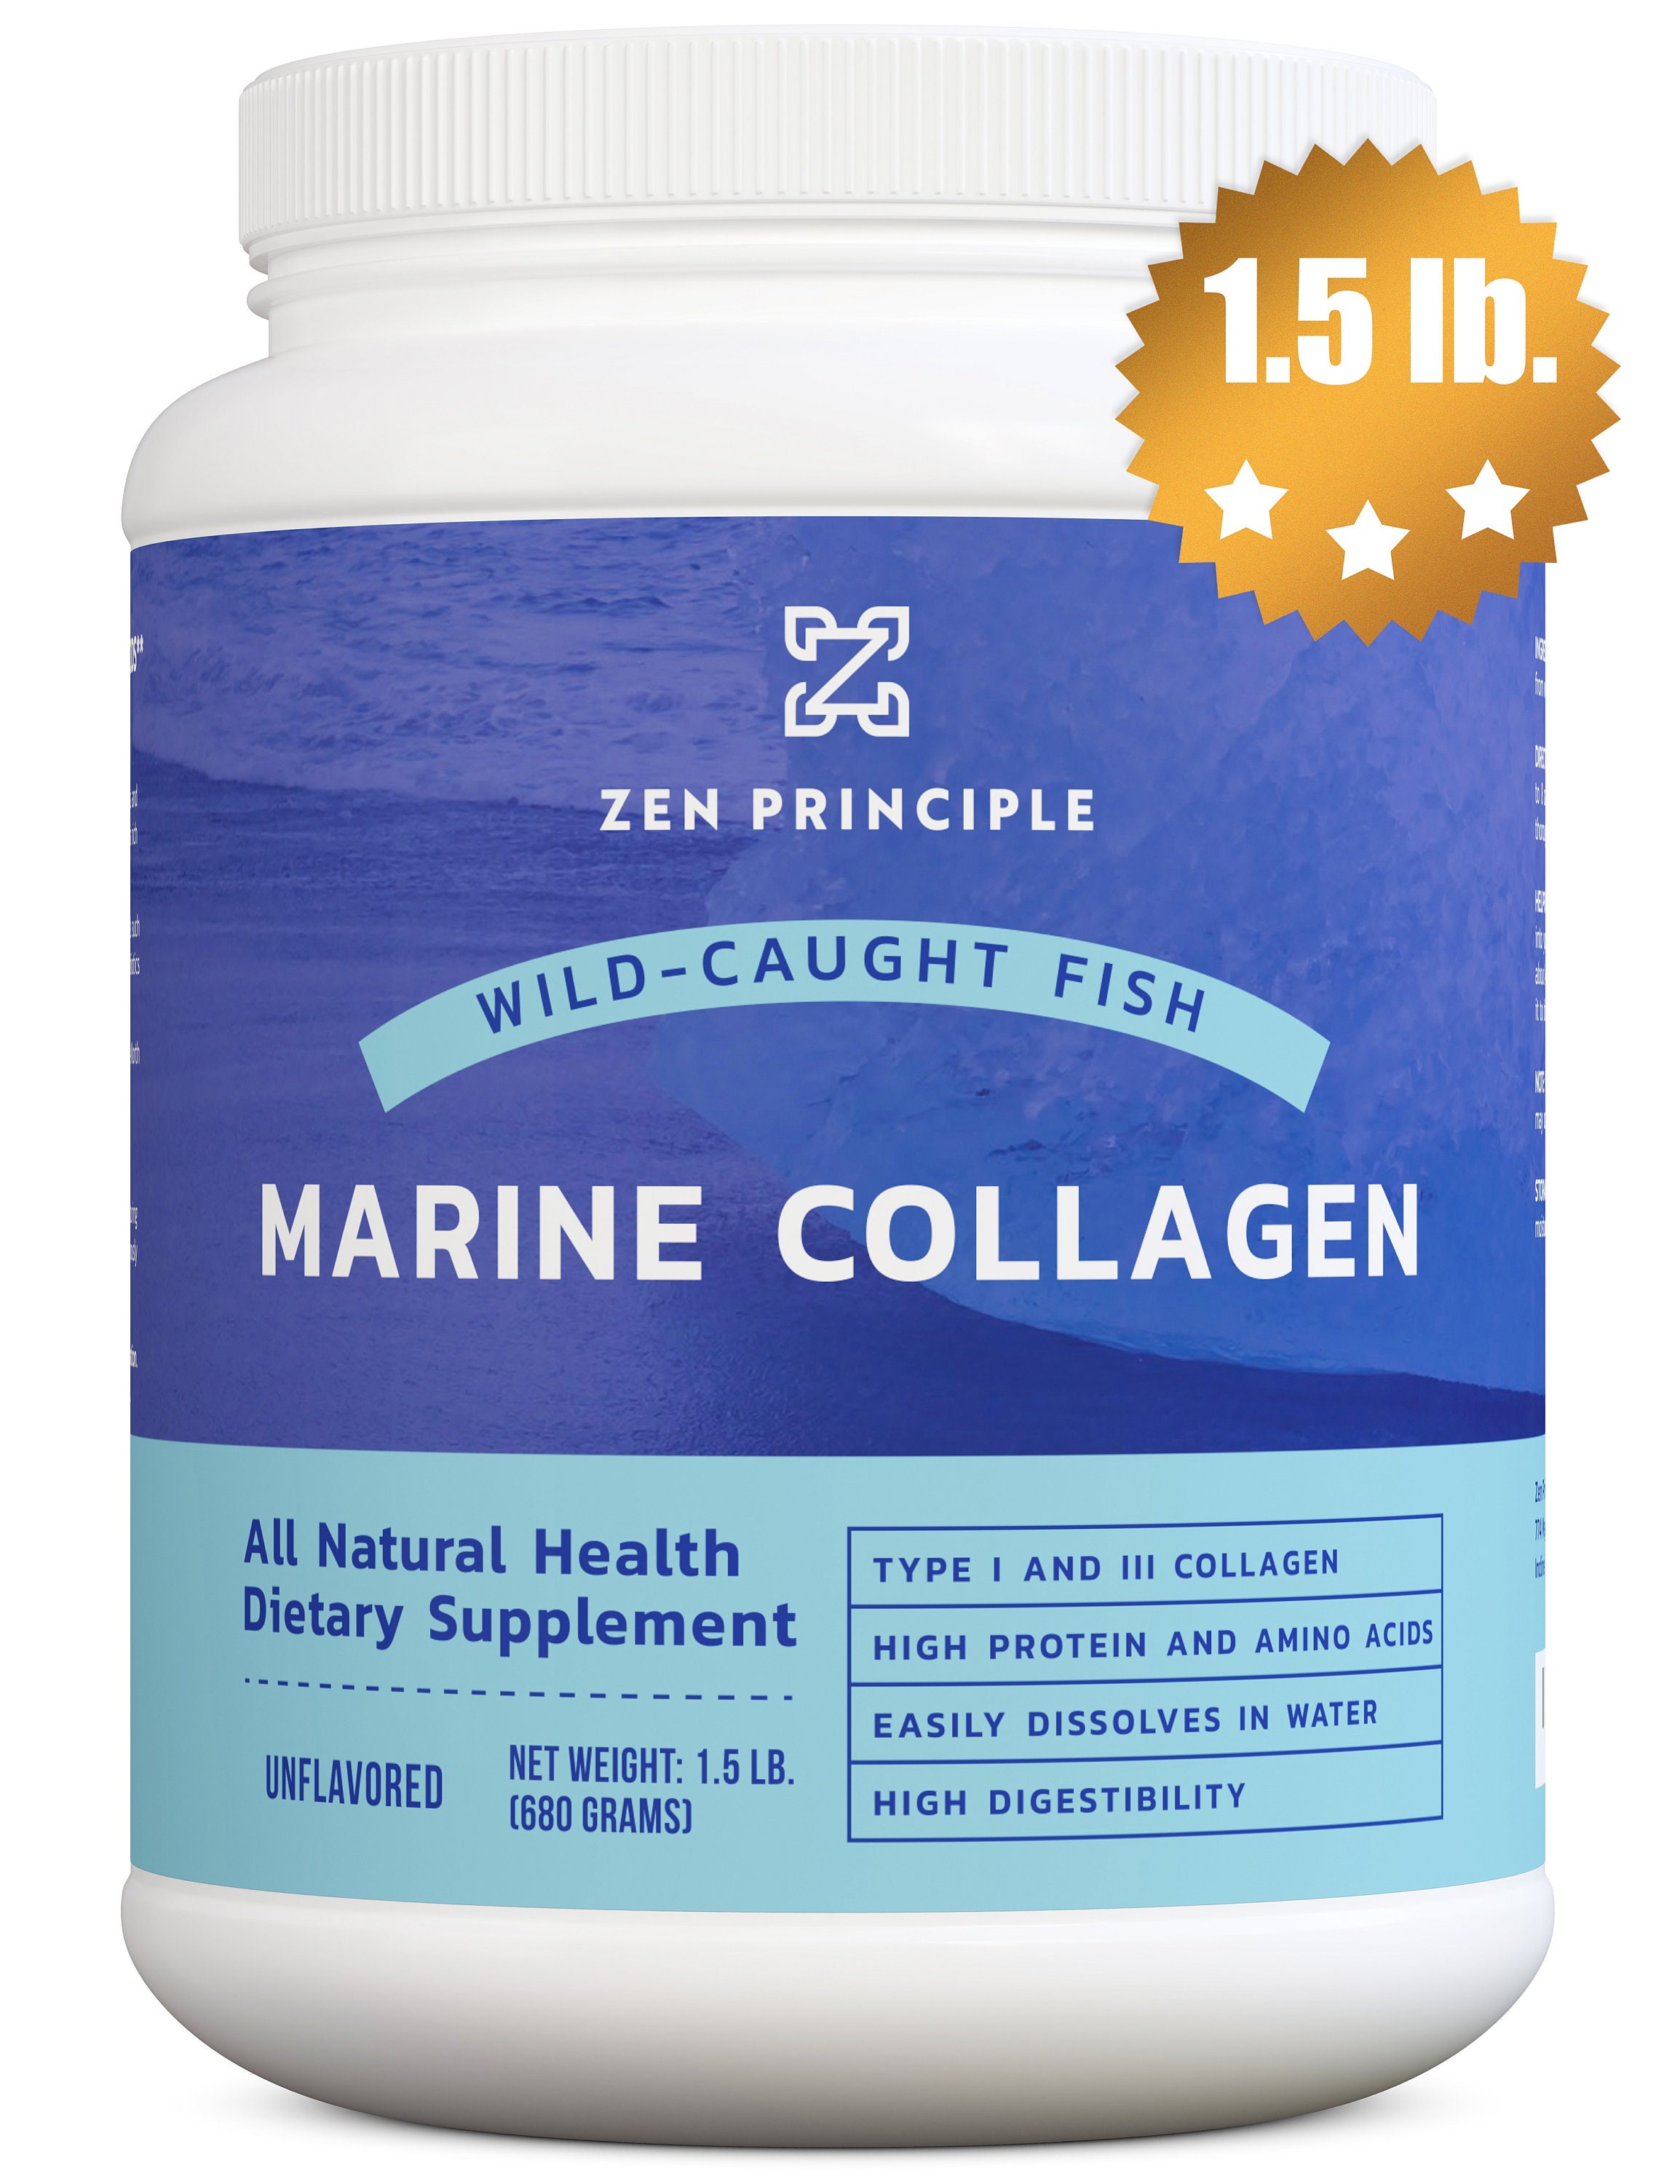 Hydrolyzed marine collagen. Морской коллаген 2 типа. Marine Collagen. Марине коллаген. Маринэ коллаген +.